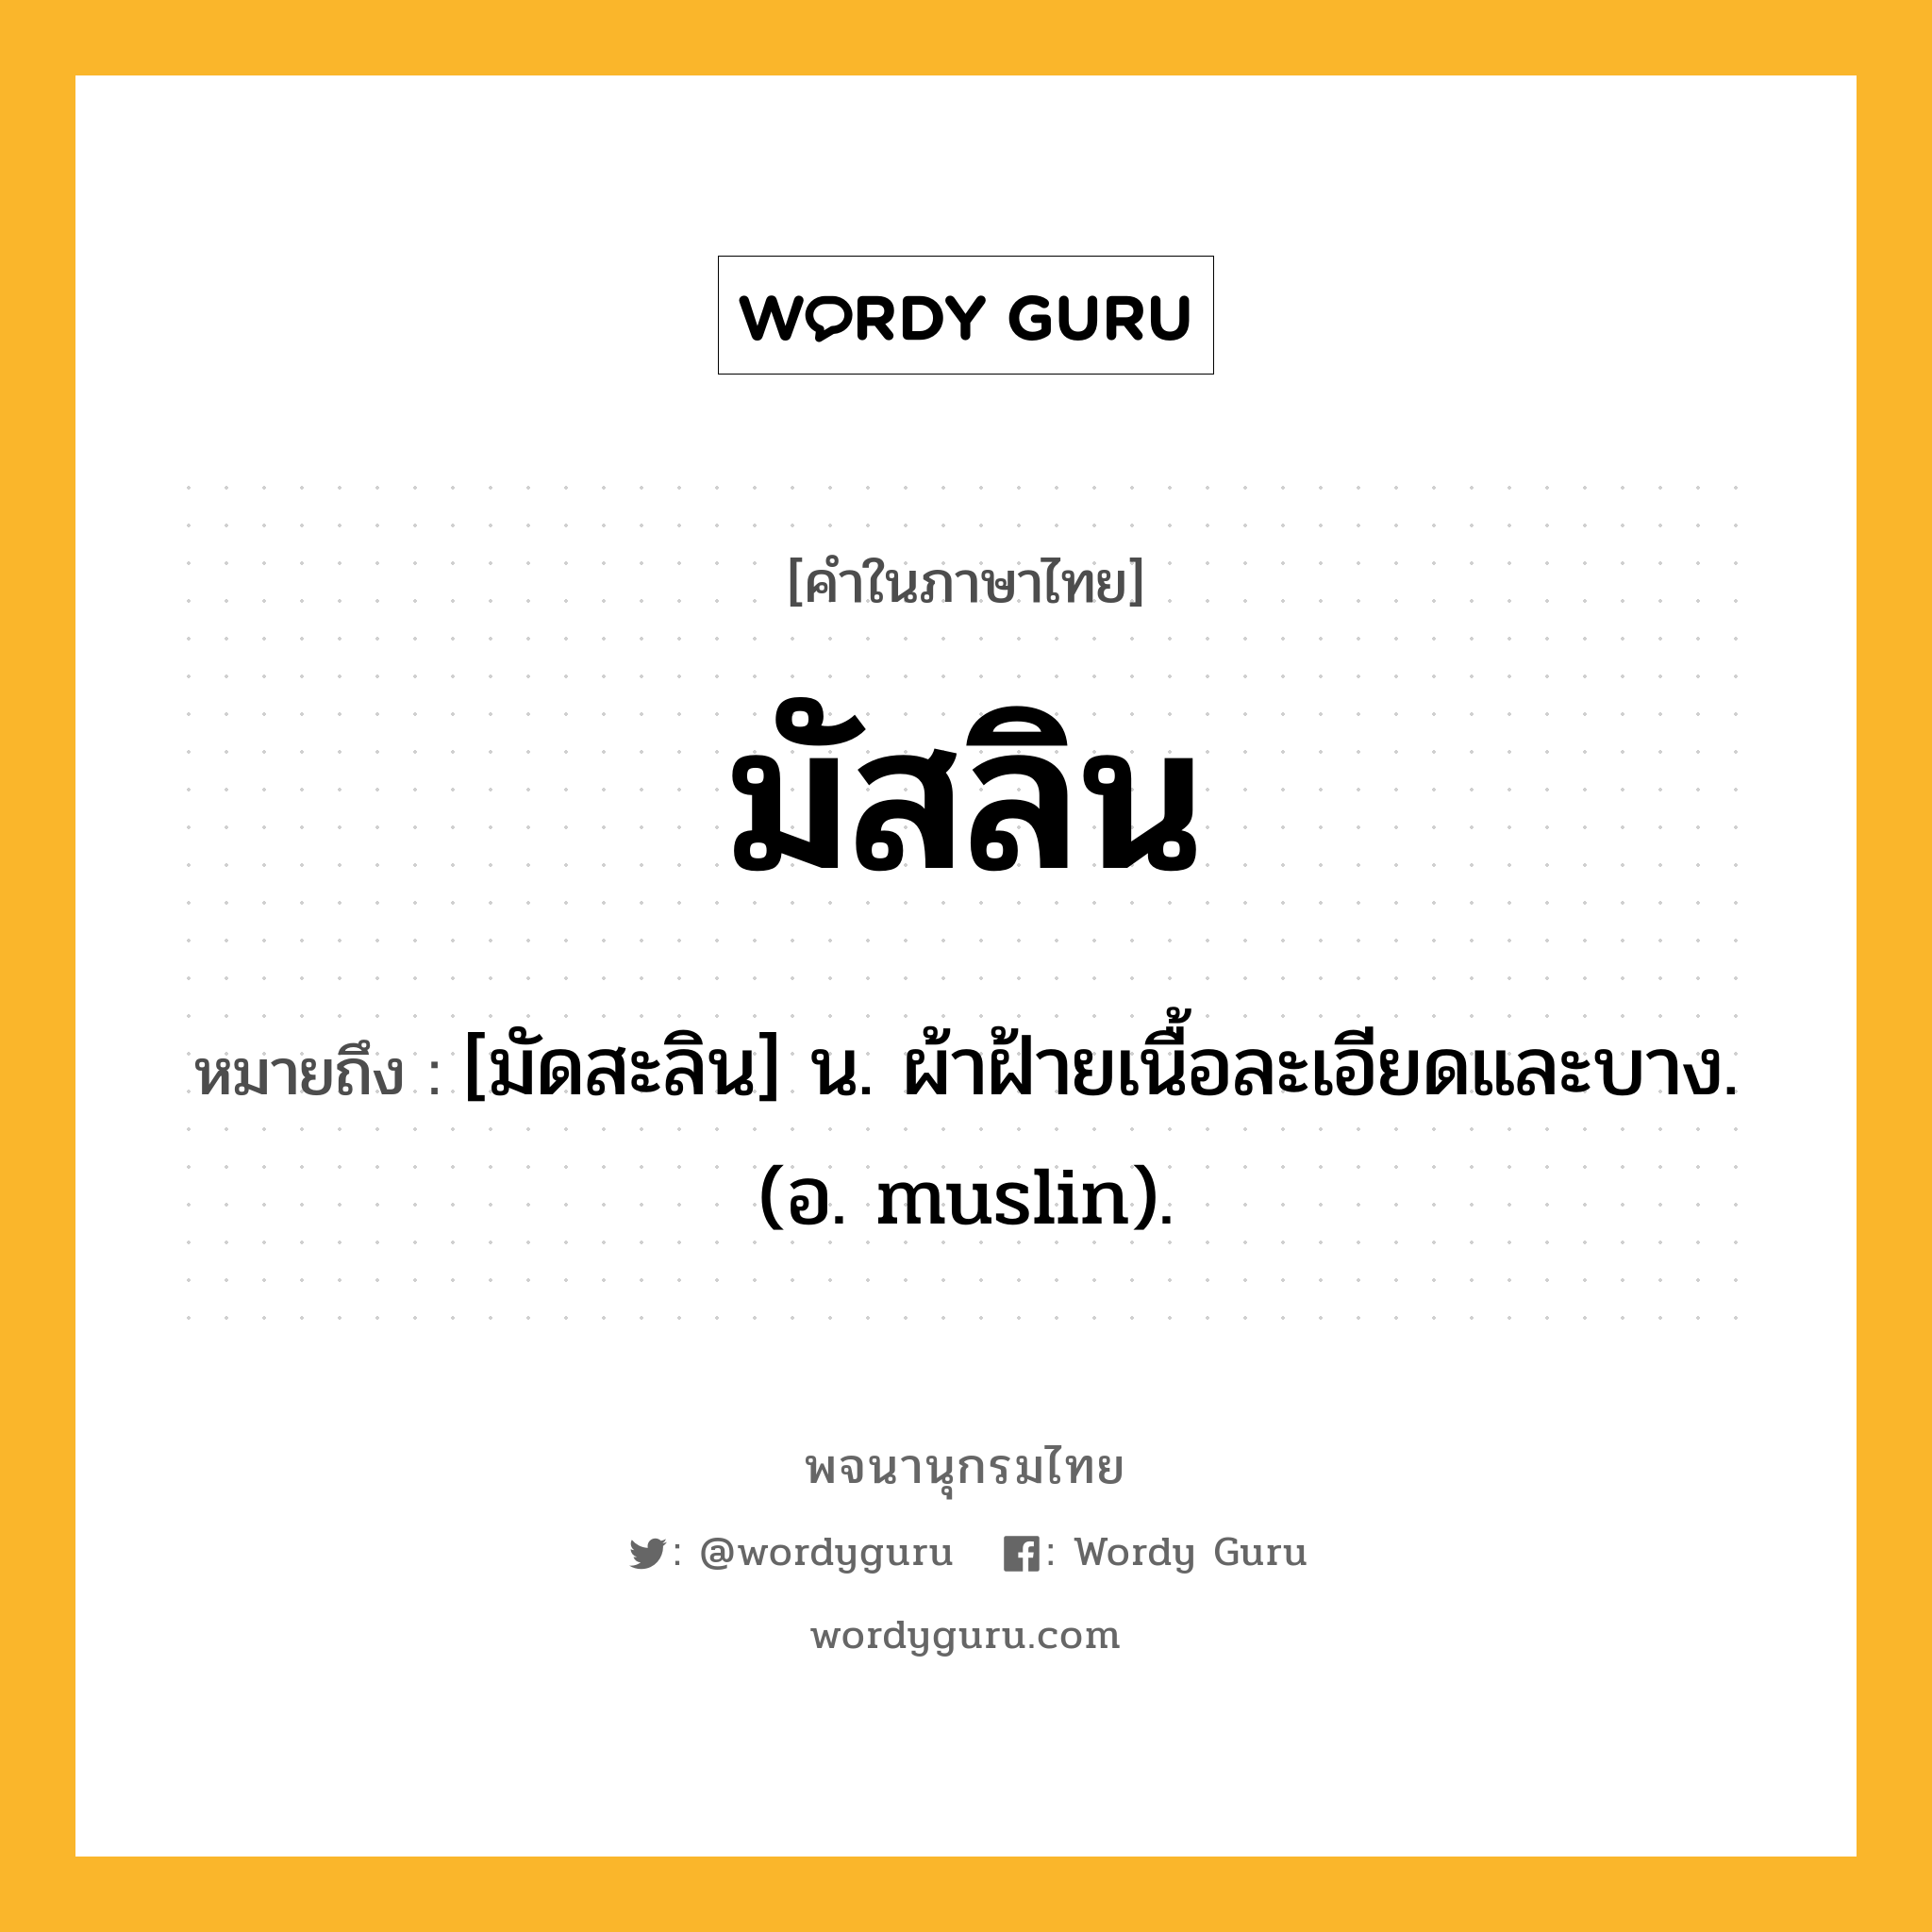 มัสลิน ความหมาย หมายถึงอะไร?, คำในภาษาไทย มัสลิน หมายถึง [มัดสะลิน] น. ผ้าฝ้ายเนื้อละเอียดและบาง. (อ. muslin).